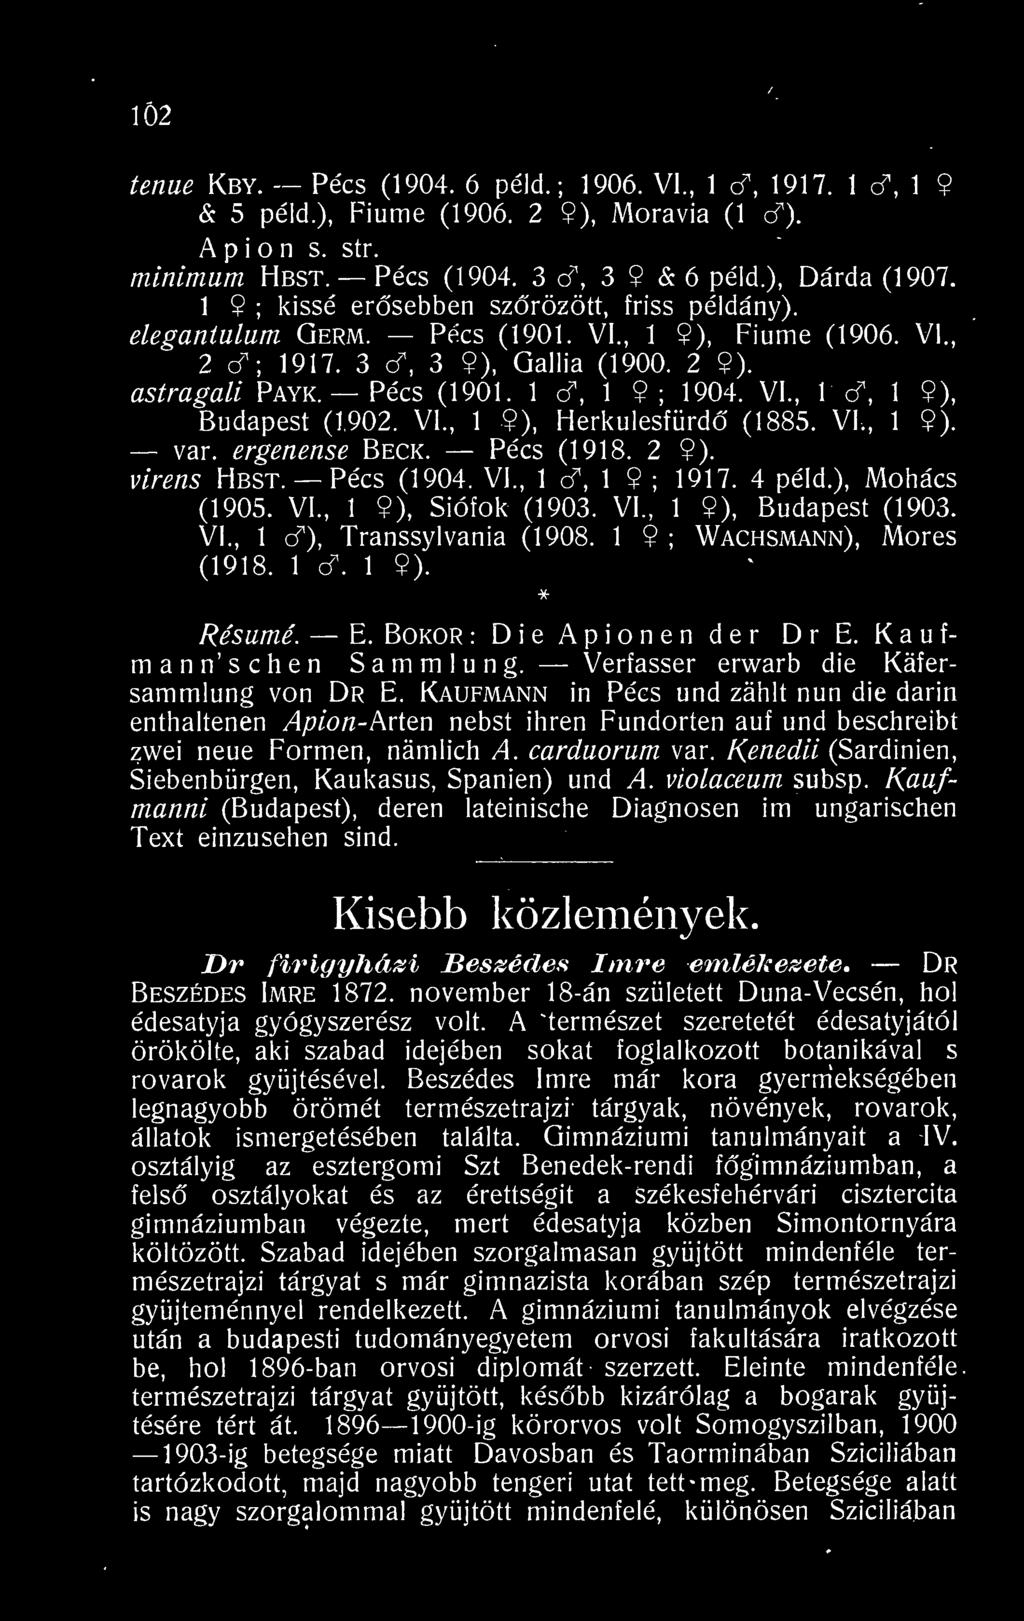 Kaufmann in Pécs und zahlt nun die darin enthaltenen Apion-hvitn nebst ihren Fundorten auf und beschreibt zwei neue Formen, námlich A. carduorum var.